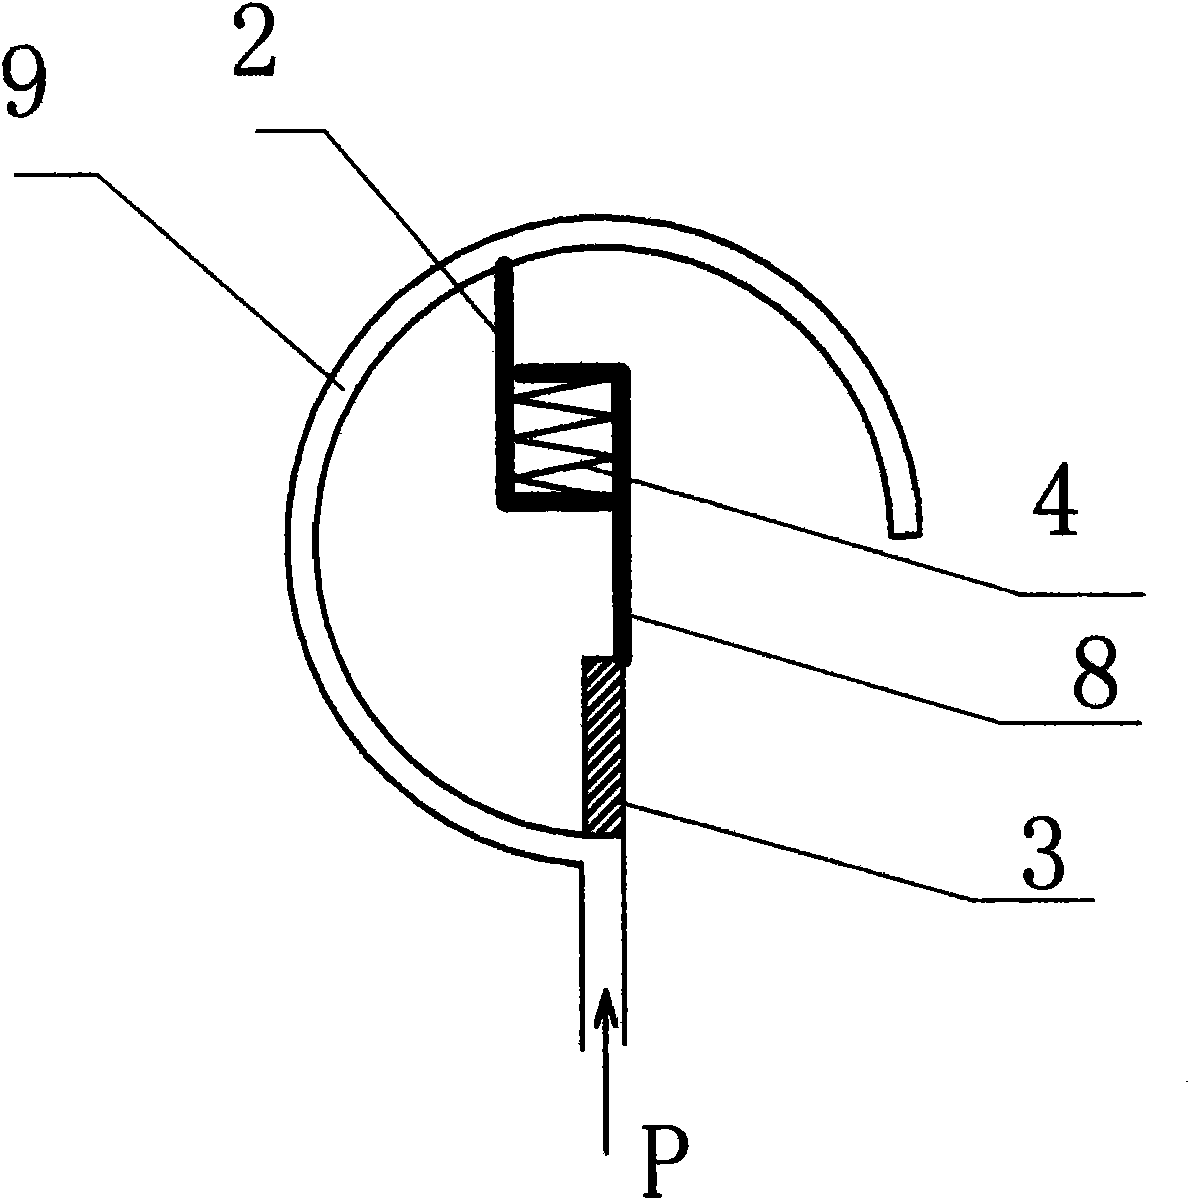 Fiber pressure sensing device based on C-shaped spring tube